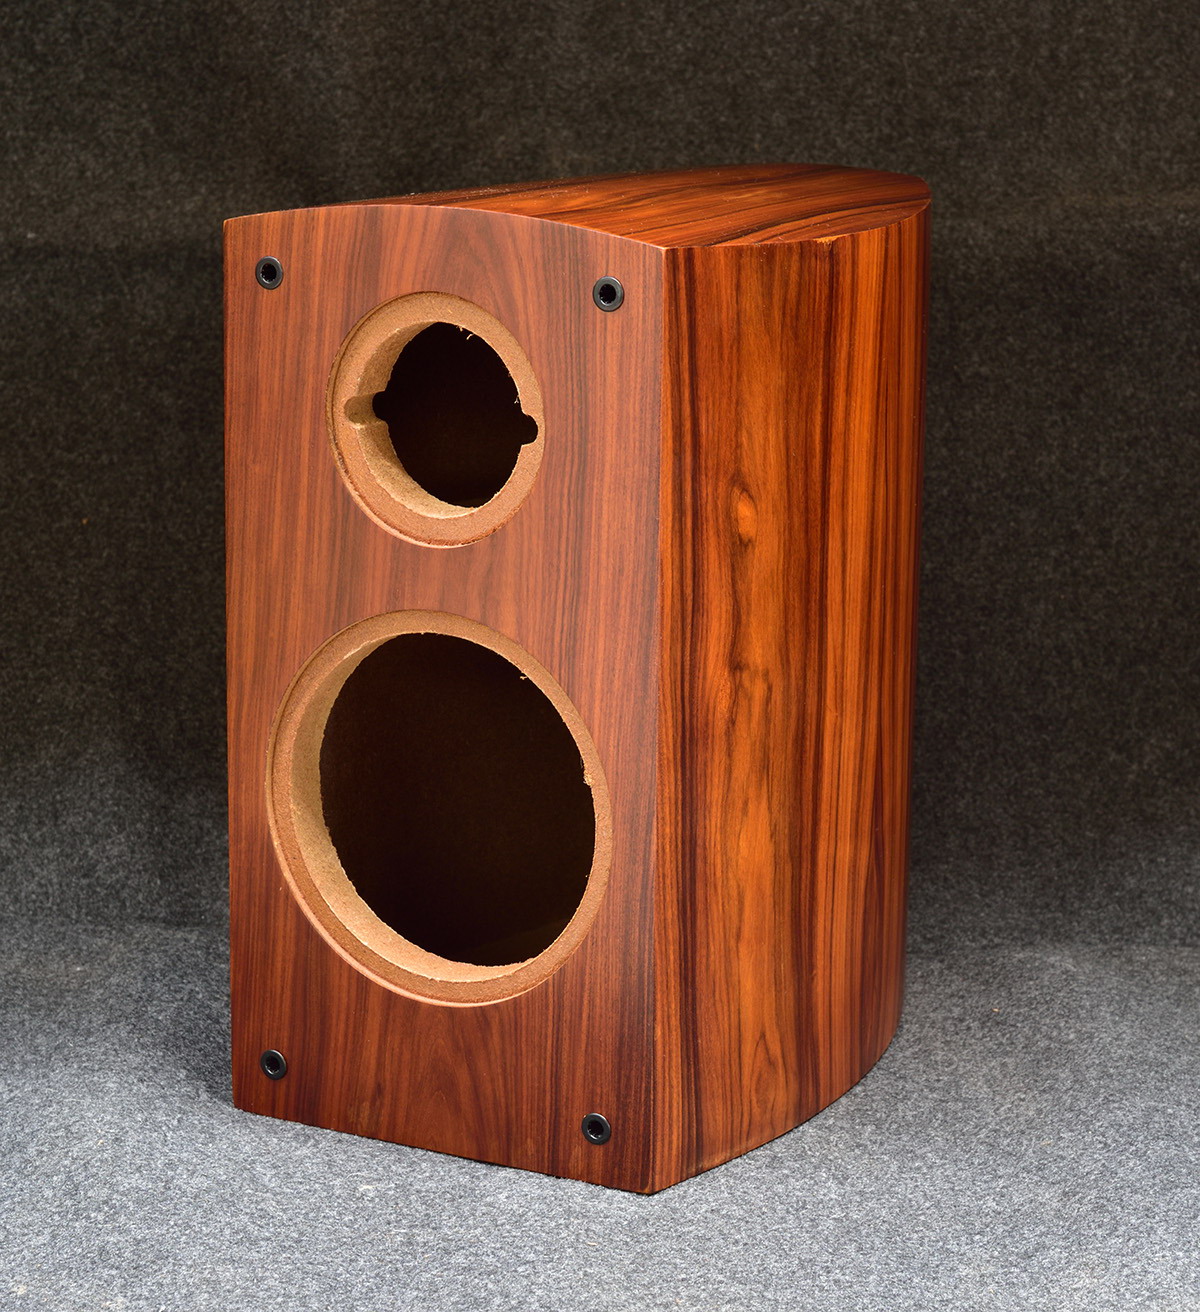 6.5 speaker enclosure design